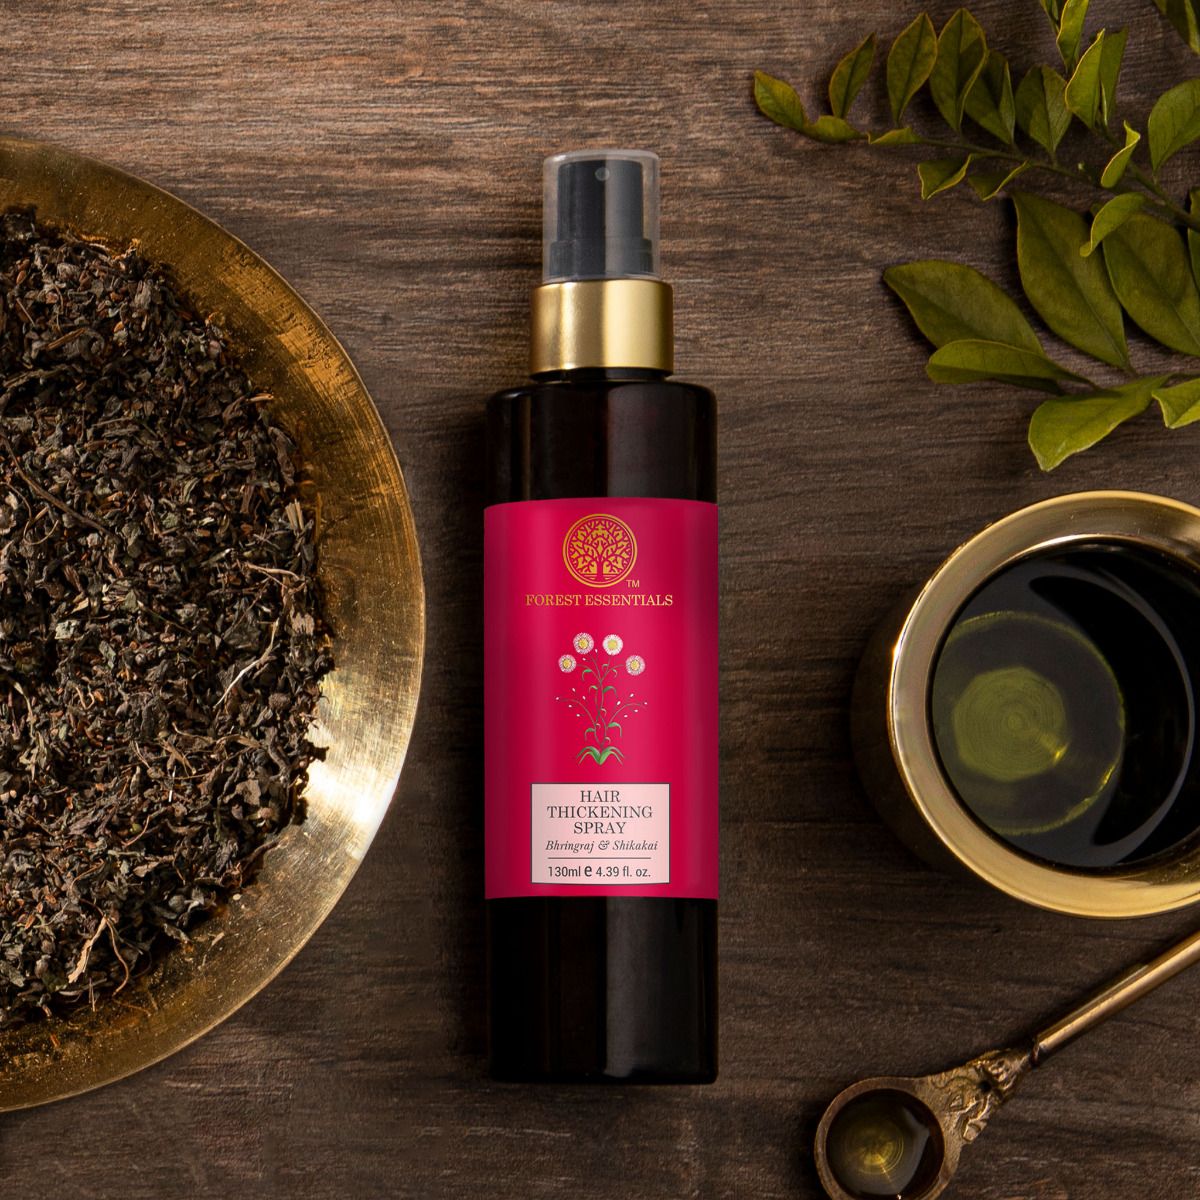 Hair Thickening Spray Bhringraj and Shikakai (130ml) | Forest Essentials